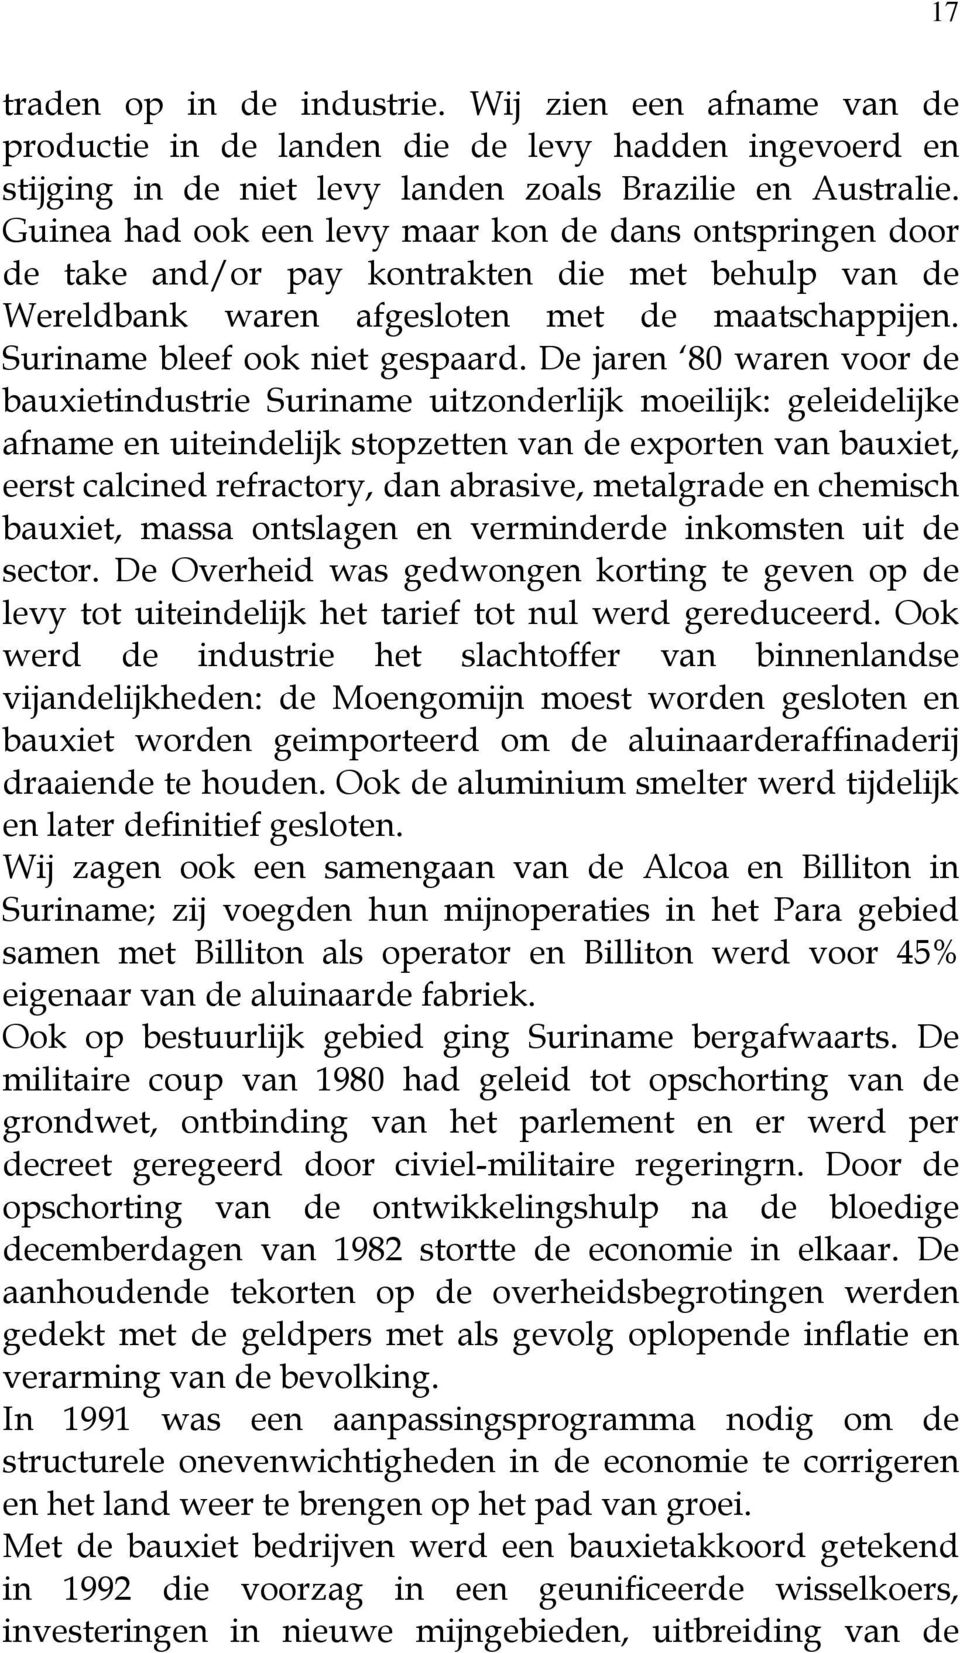 De jaren 80 waren voor de bauxietindustrie Suriname uitzonderlijk moeilijk: geleidelijke afname en uiteindelijk stopzetten van de exporten van bauxiet, eerst calcined refractory, dan abrasive,